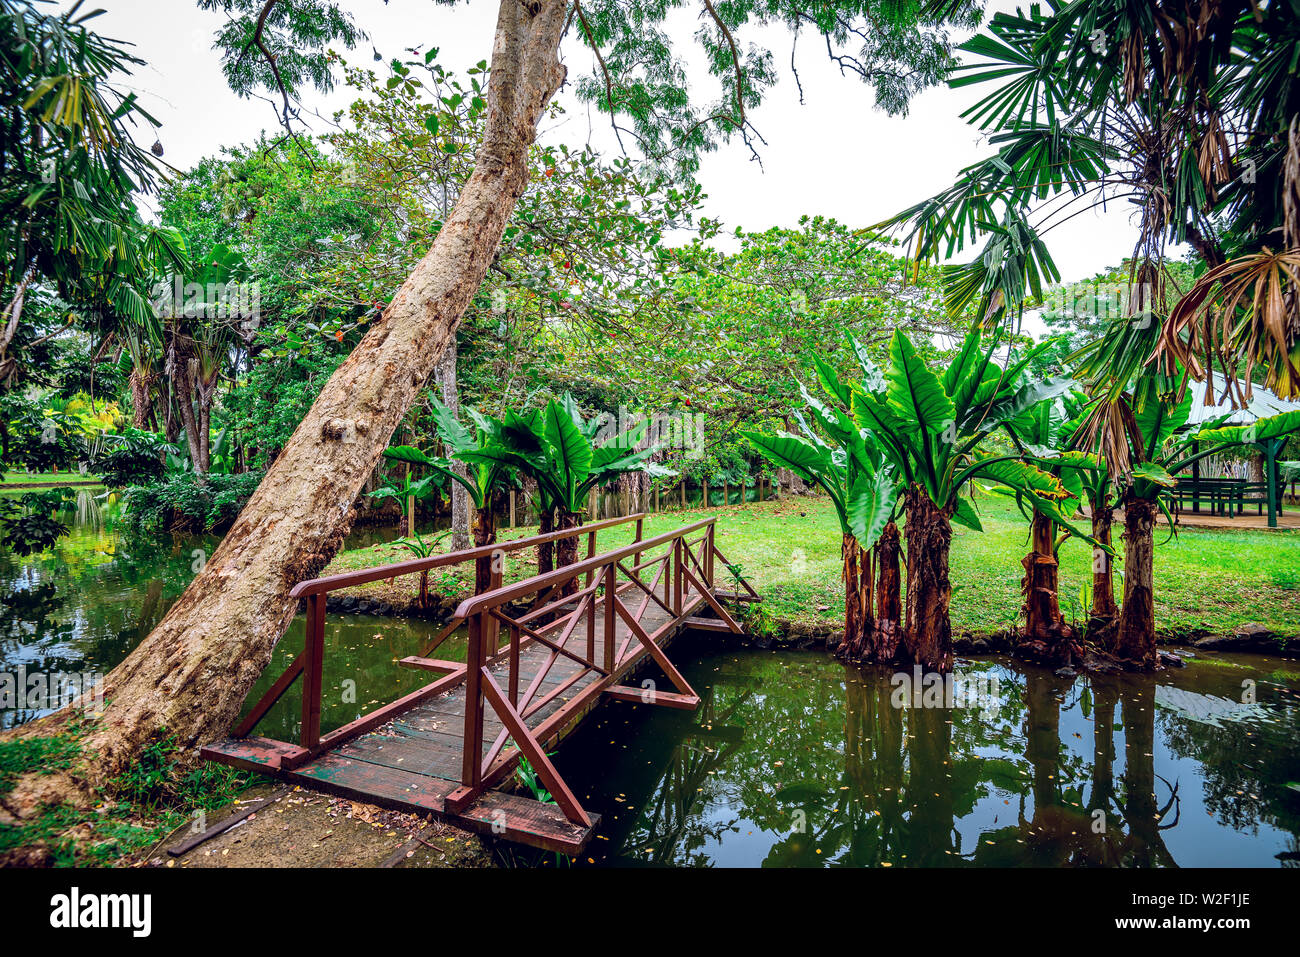 Sir Seewoosagur Ramgoolam Botanical Garden sur l'île paradisiaque de l'île Maurice. La tonalité de l'image. Banque D'Images